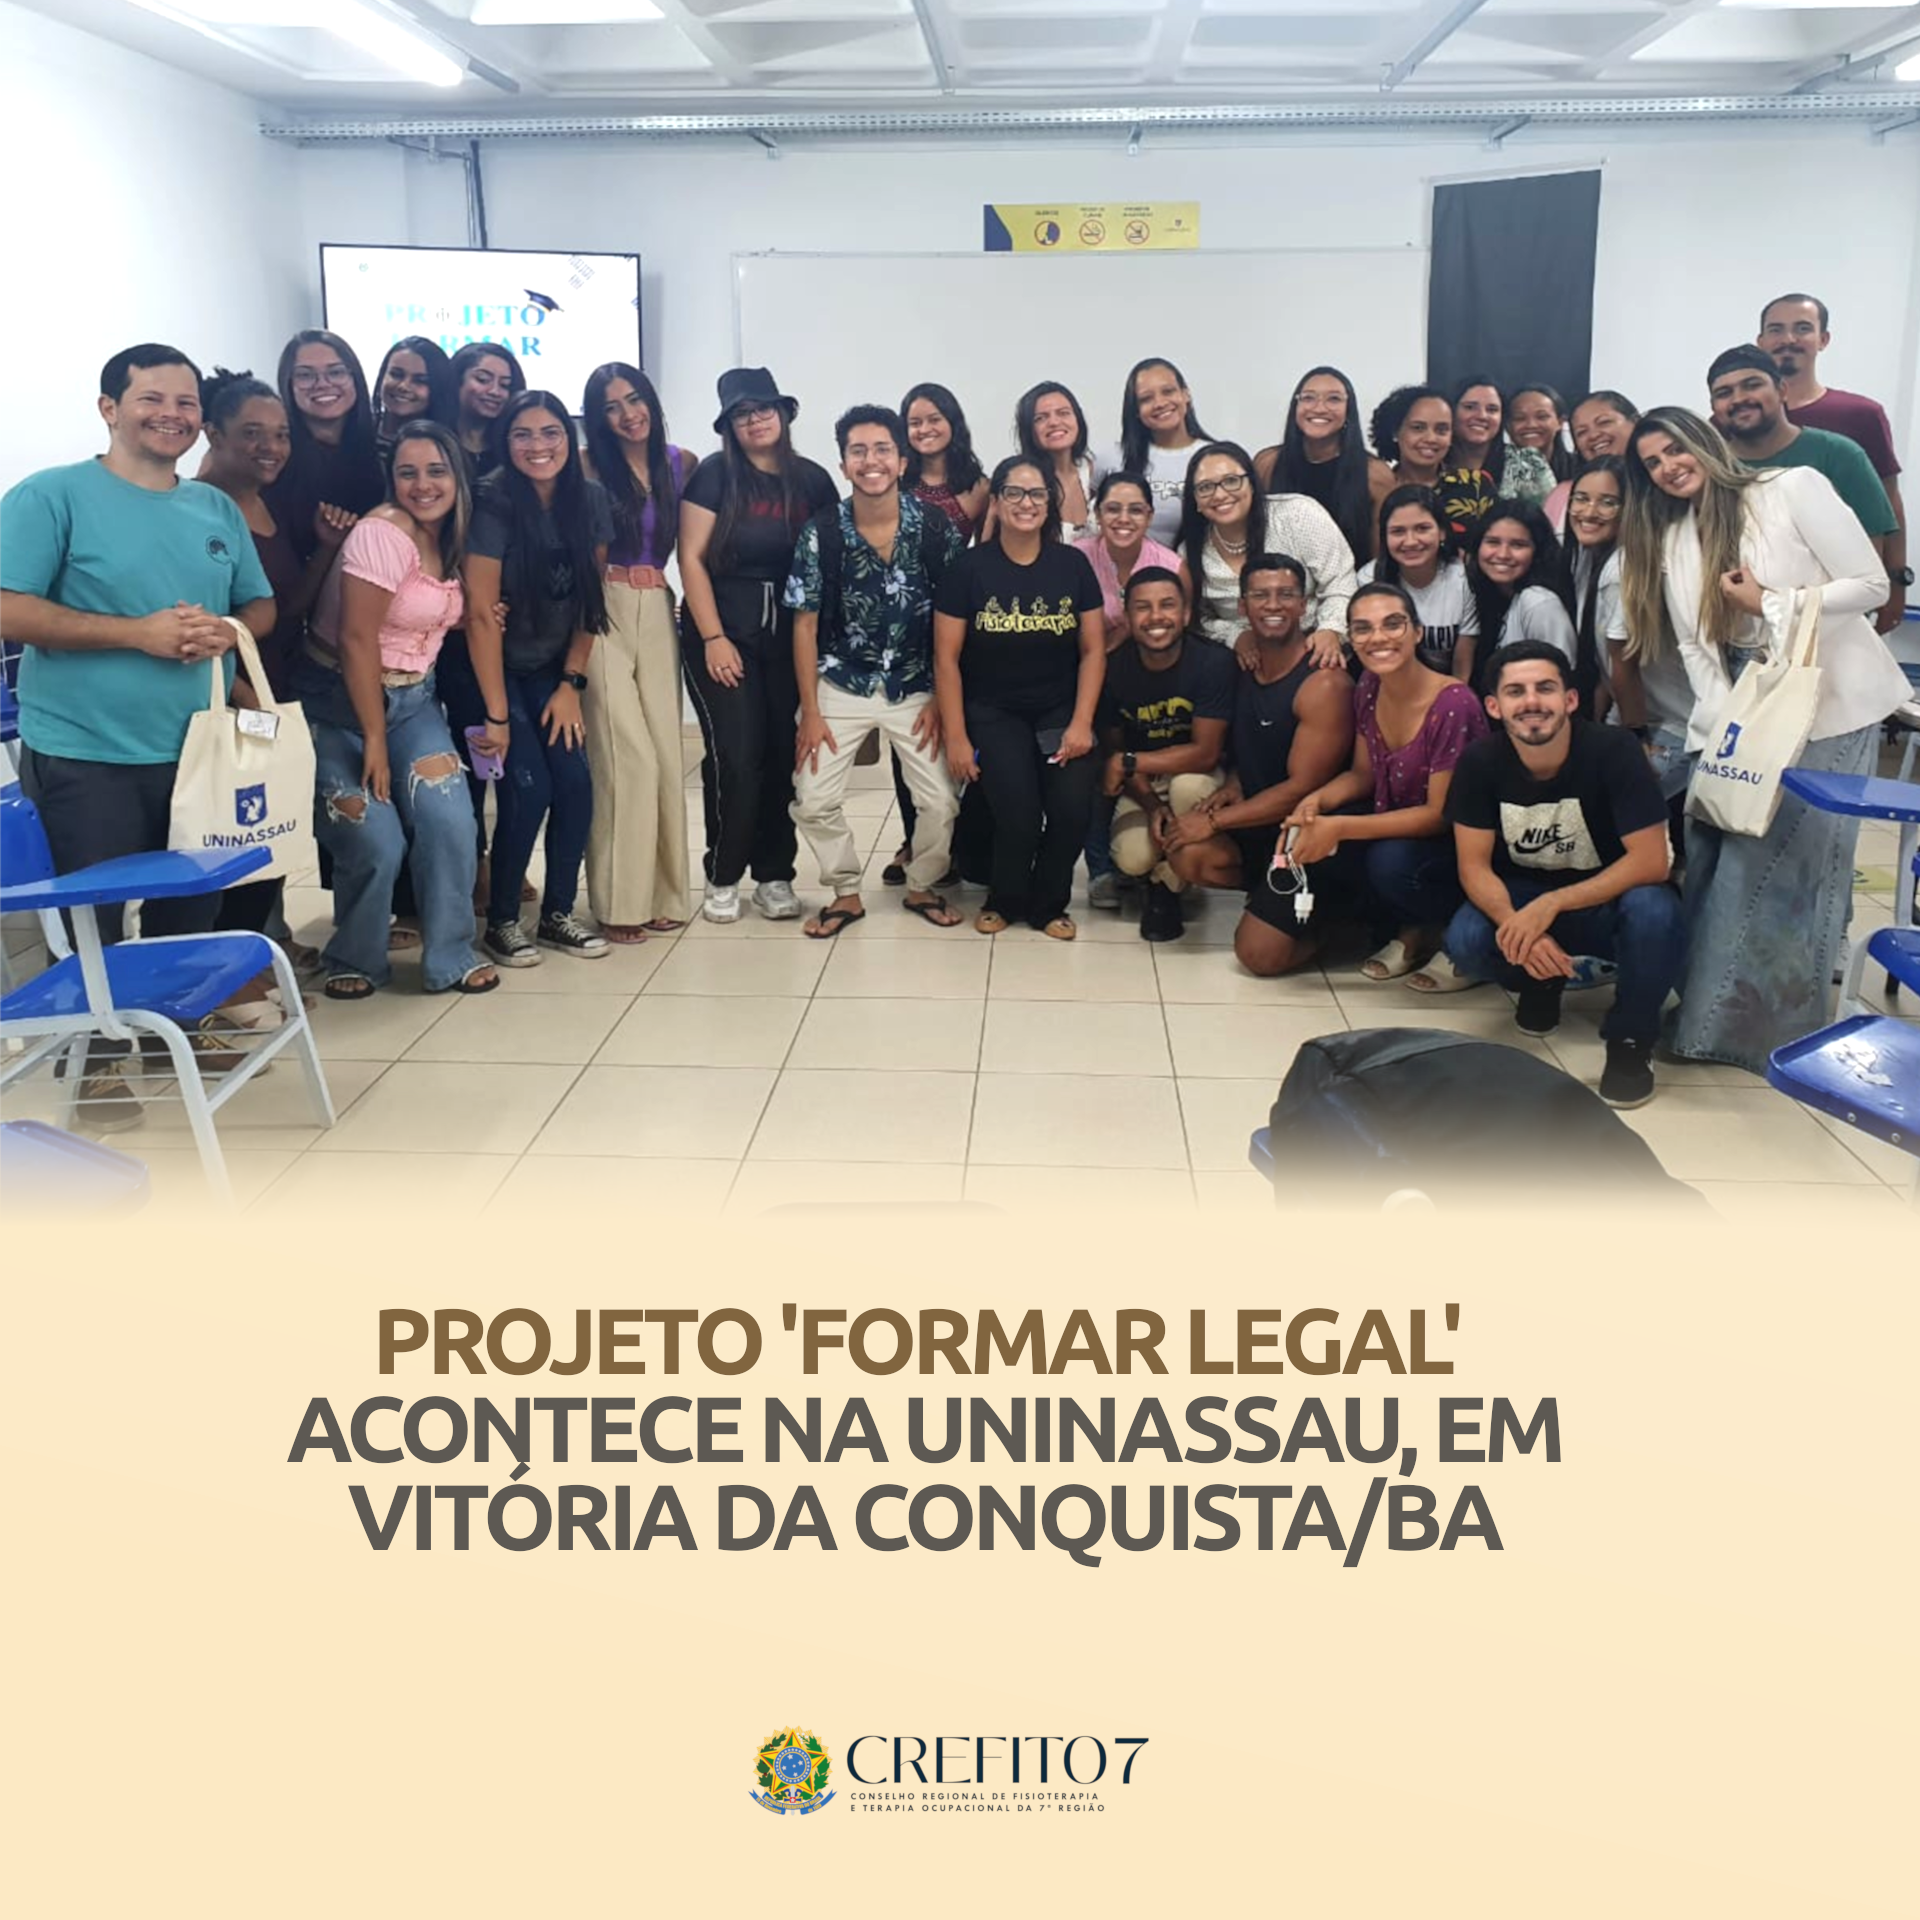 PROJETO ‘FORMAR LEGAL’ ACONTECE NA UNINASSAU, EM VITÓRIA DA CONQUISTA/BA